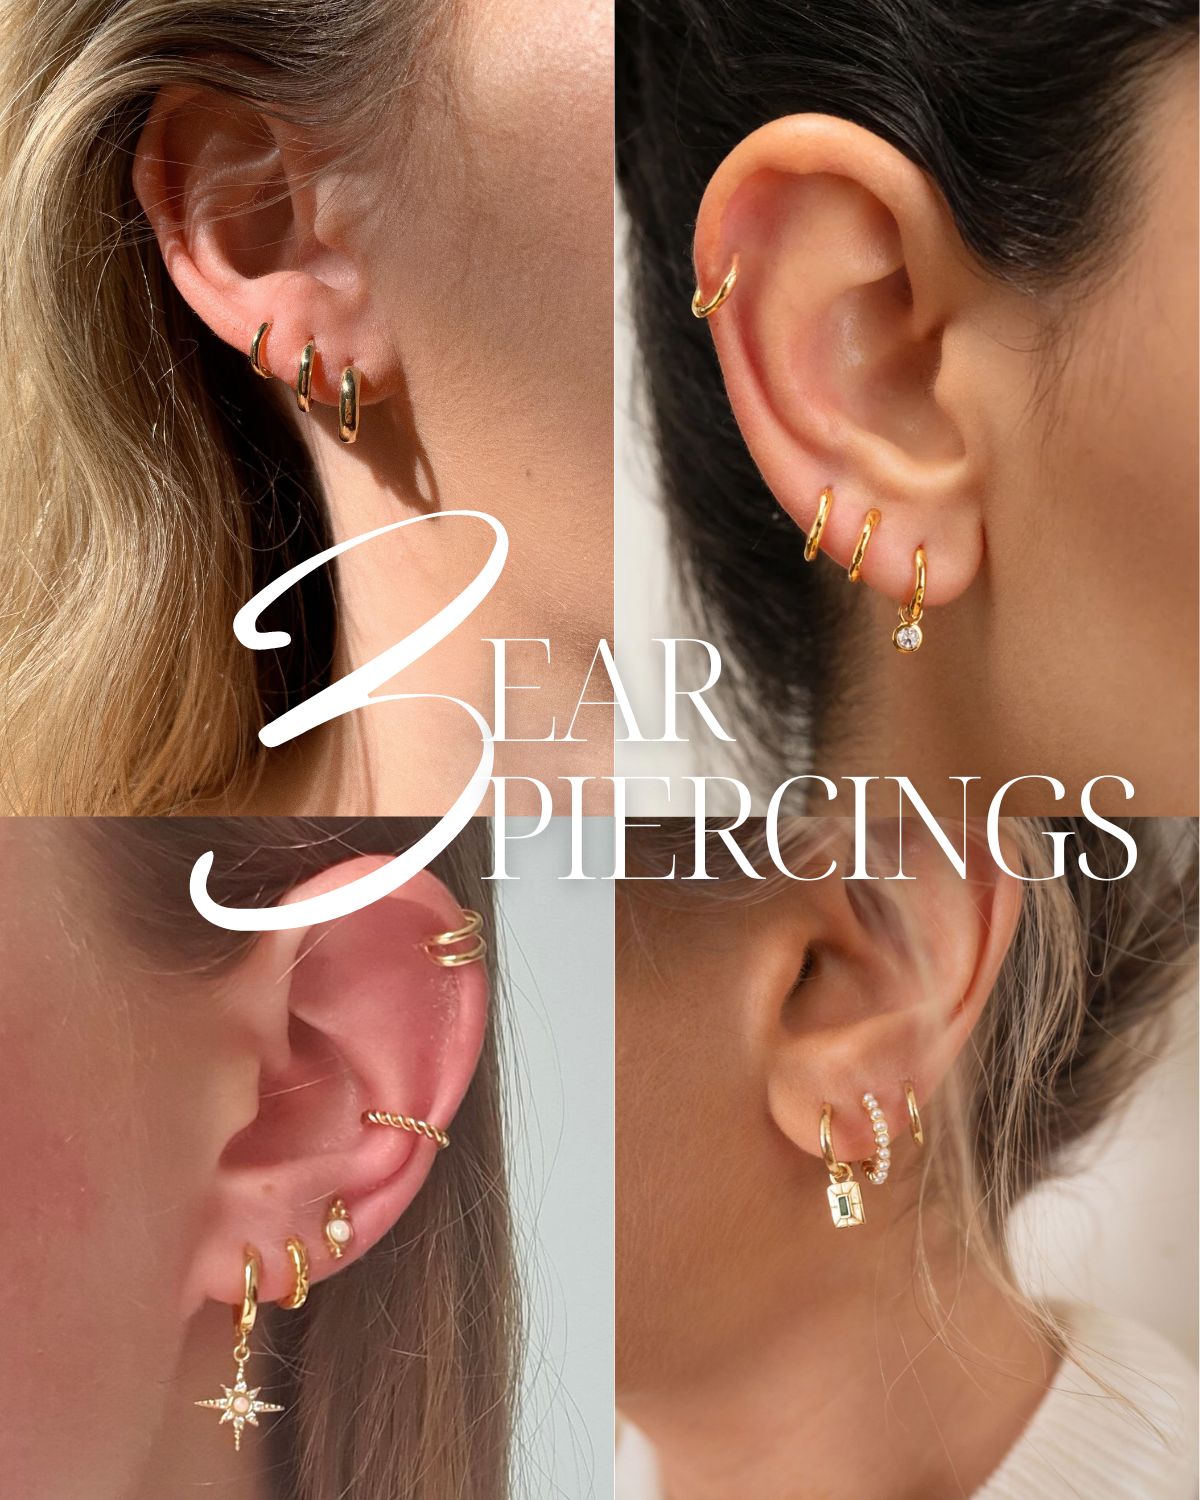 Four women with multiple ear piercings